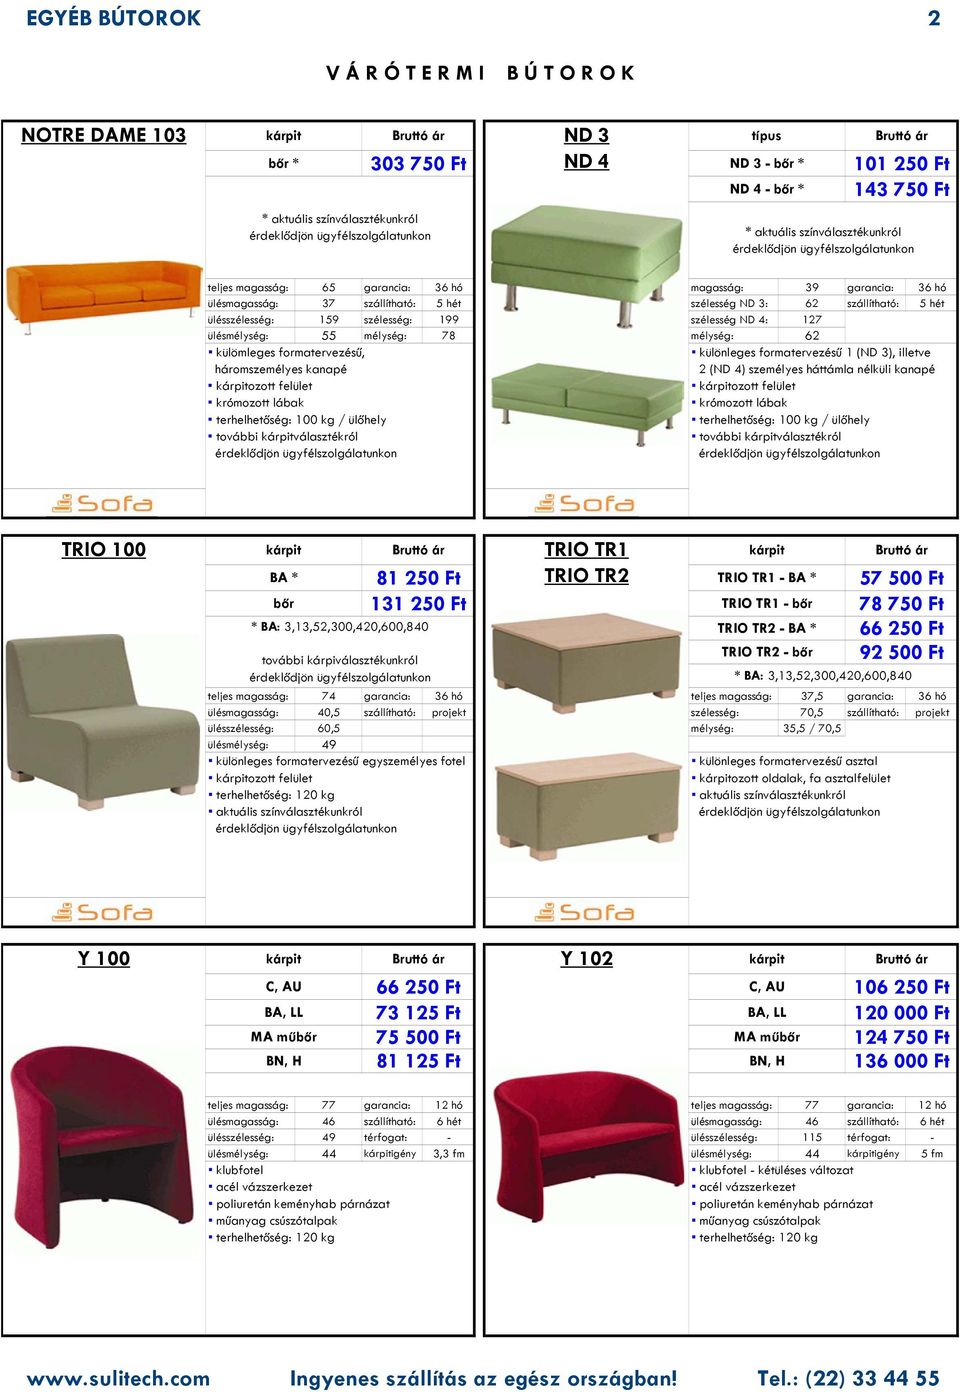 háromszemélyes kanapé ozott felület / ülőhely további választékról különleges formatervezésű 1 (ND 3), illetve 2 (ND 4) személyes háttámla nélküli kanapé ozott felület / ülőhely további választékról